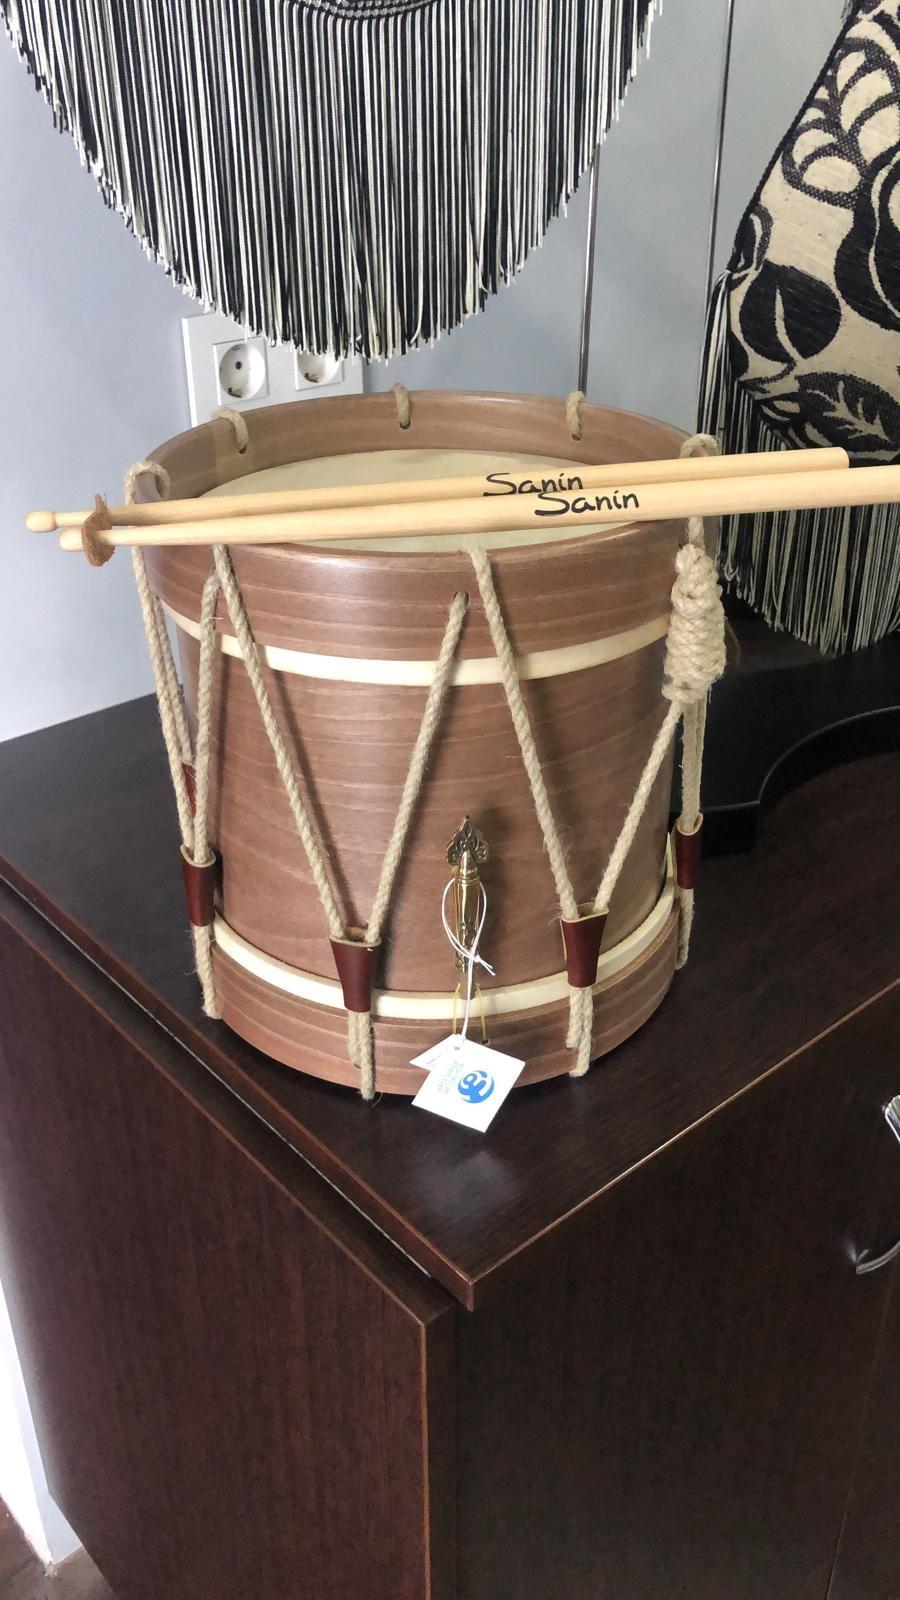 tamboril Sanín Percusión Tradicional